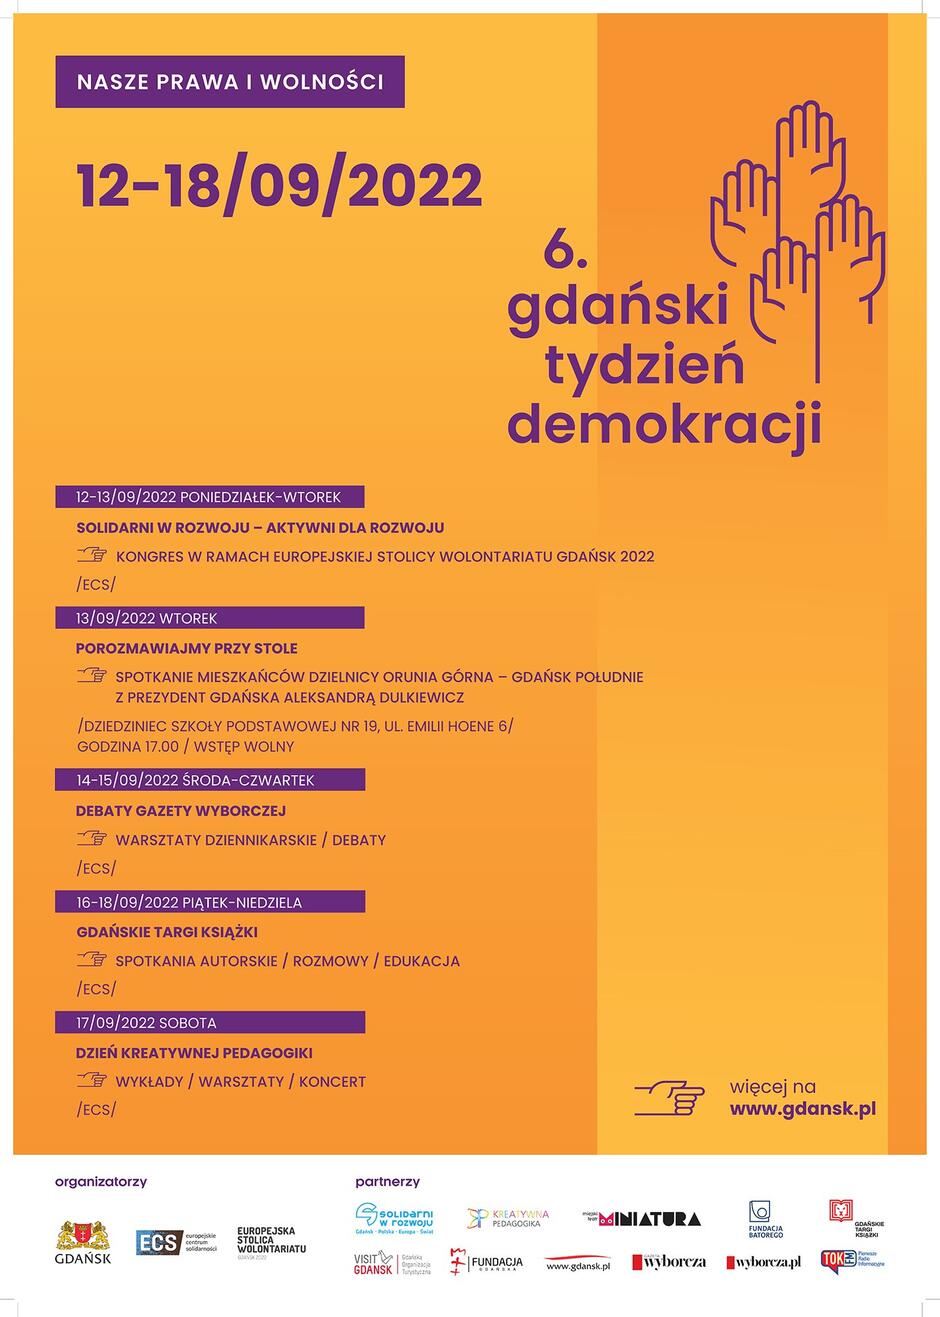 Plakat informujący o najważniejszych wydarzeniach Gdańskiego Tygodnia Demokracji 